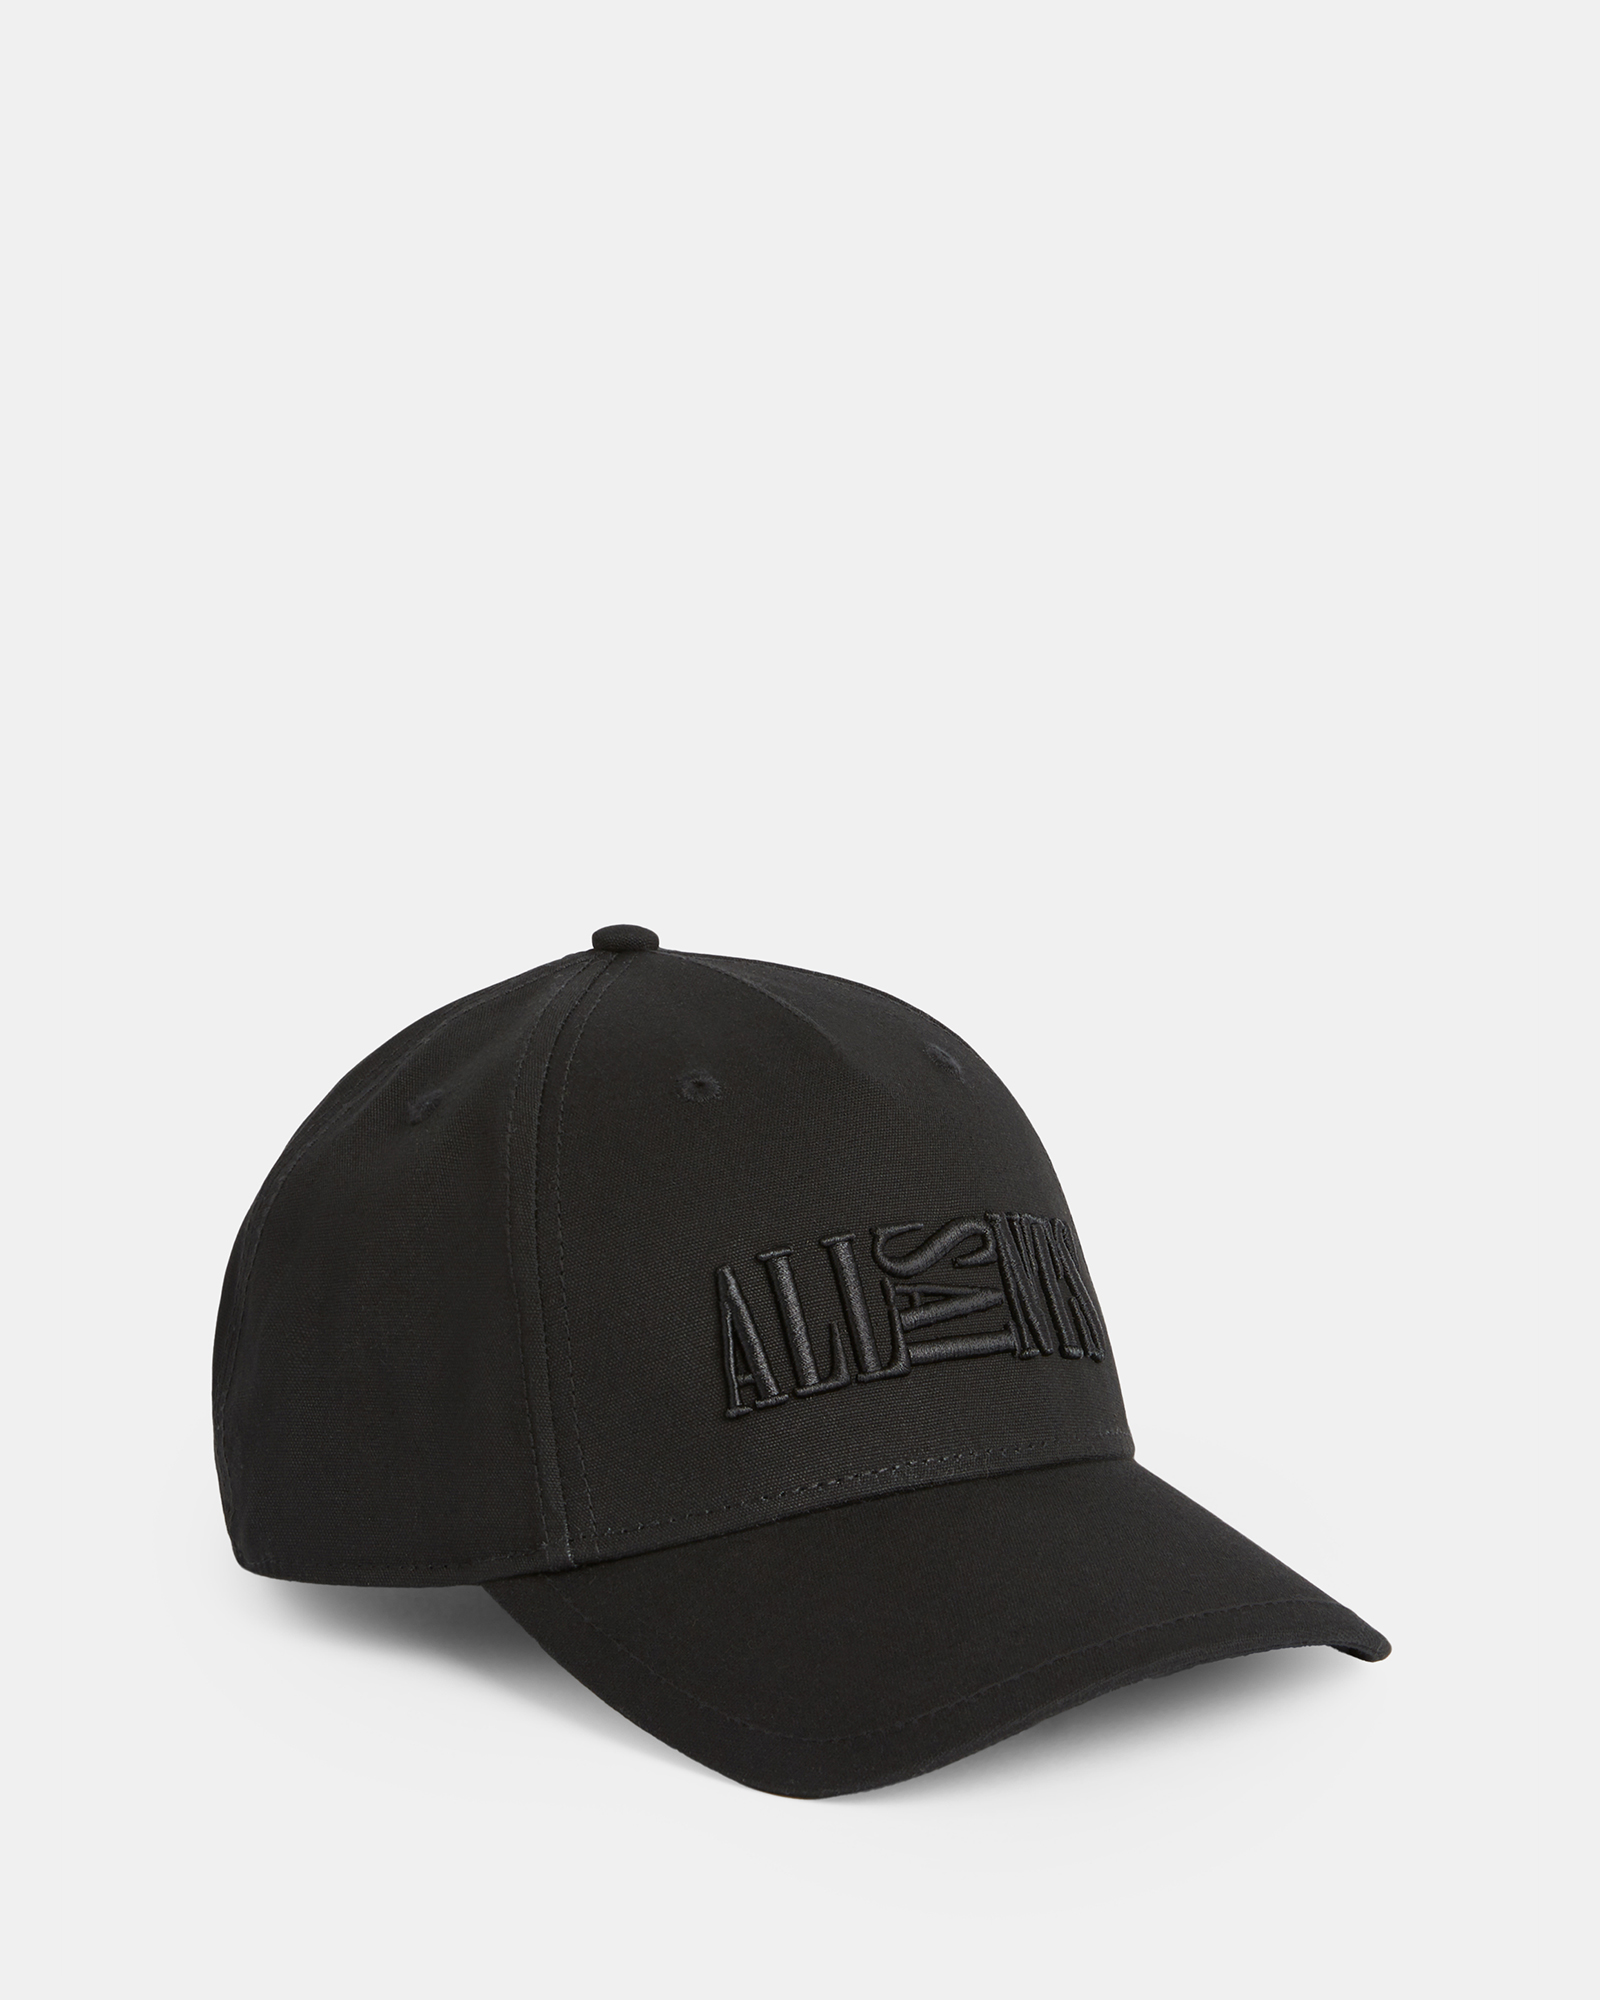 AllSaints Oppose Embroidered Baseball Cap,, Black